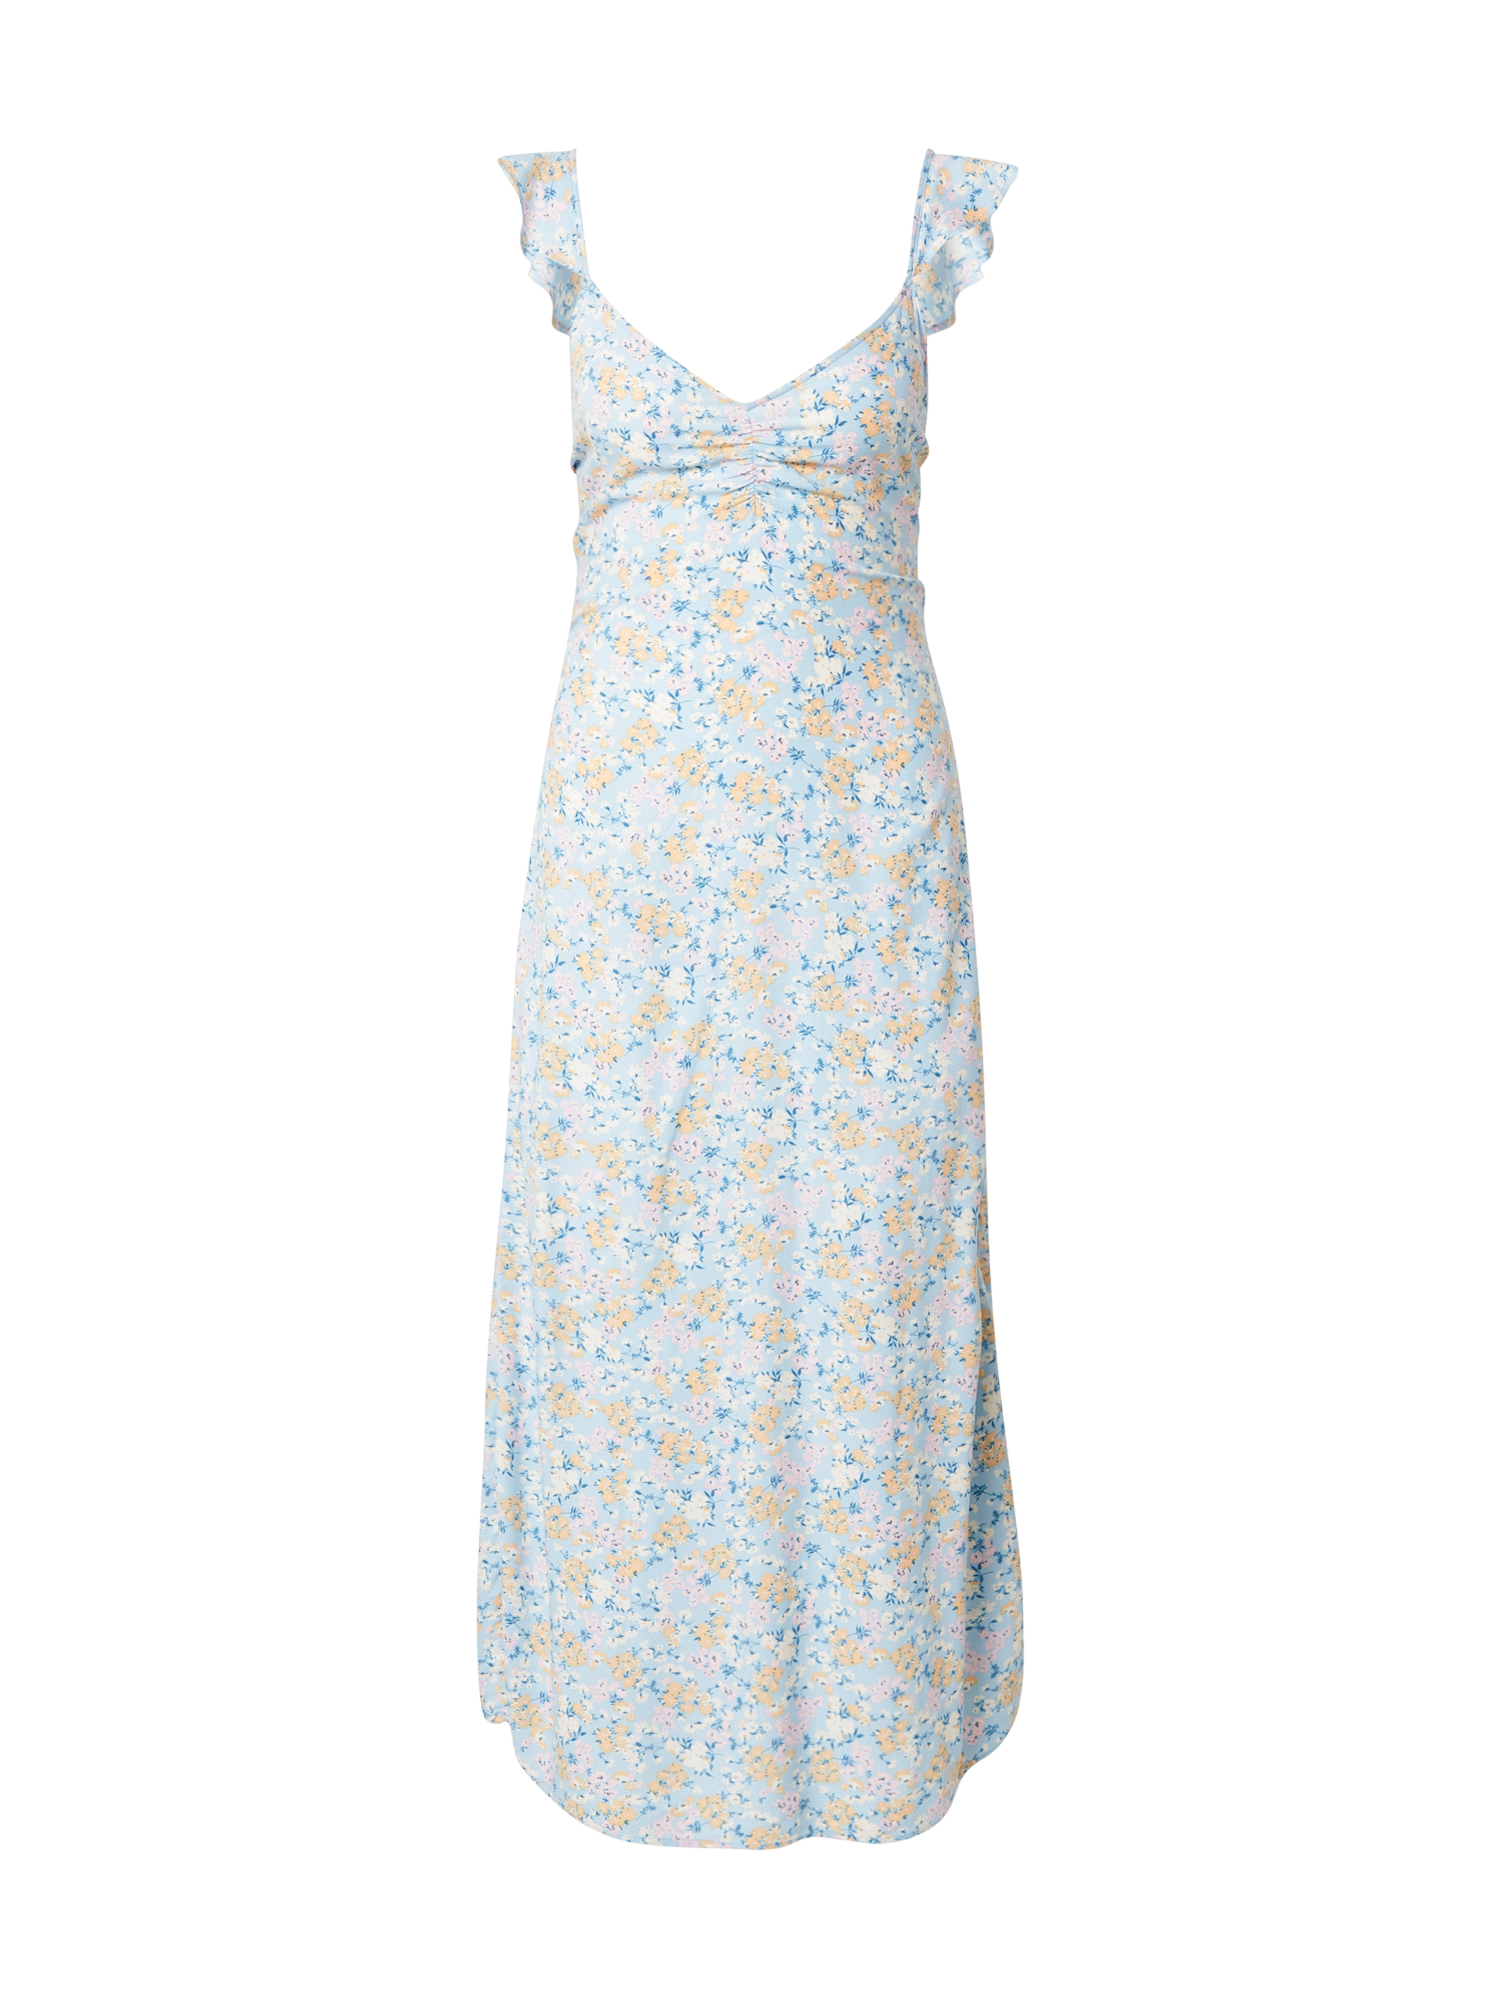 nh2Zg Odzież Pimkie Letnia sukienka TODAYY w kolorze Jasnoniebieski, Błękitnym 